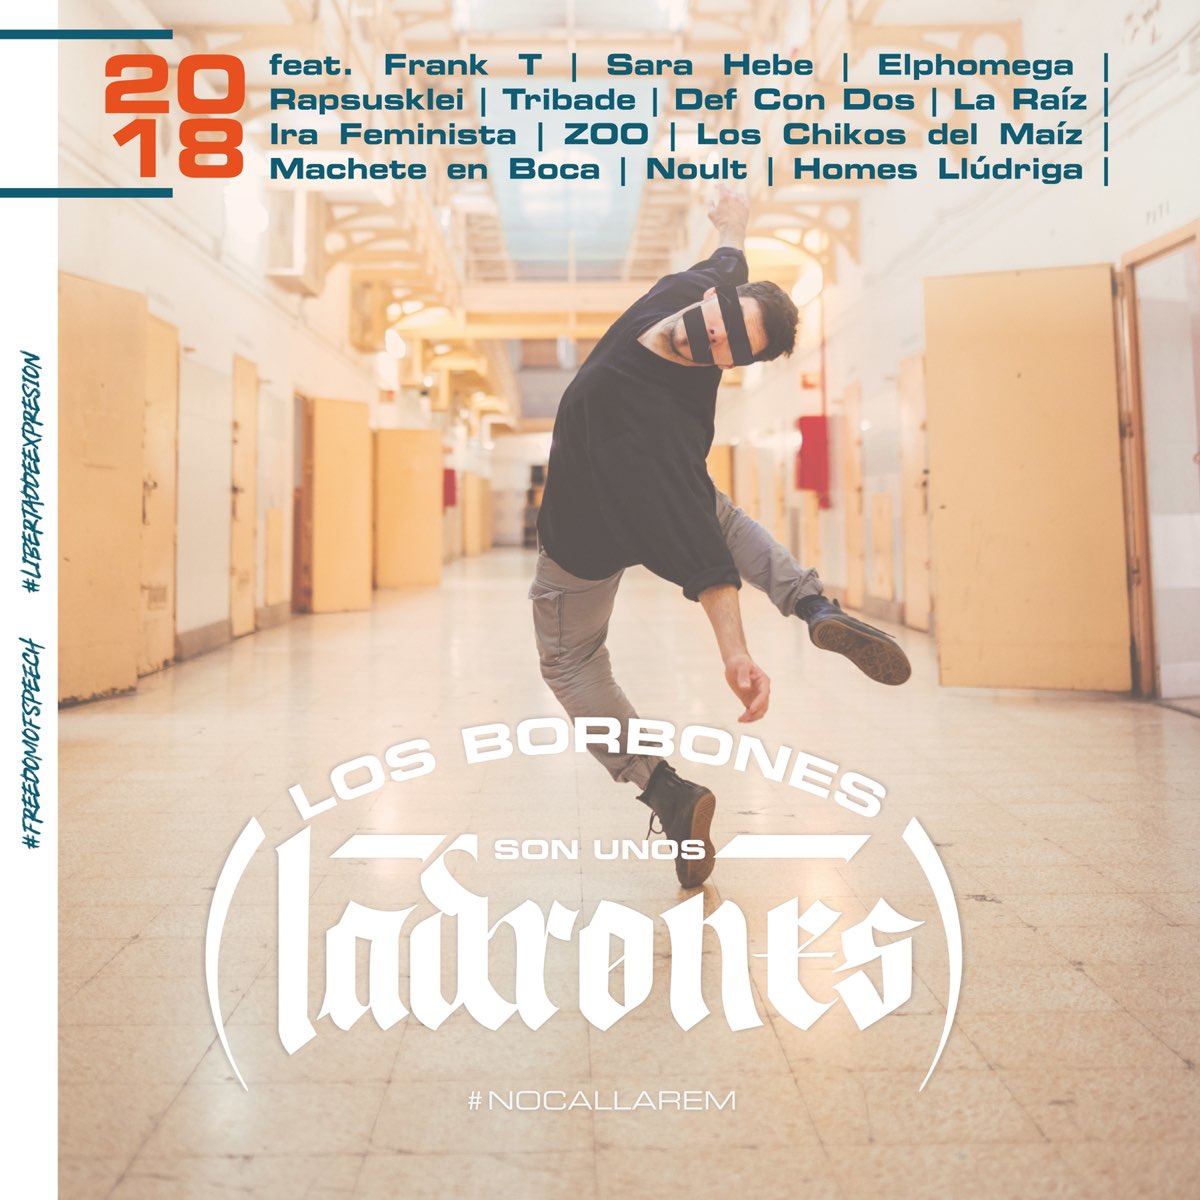 Los Borbones Son Unos Ladrones - Single - Album by Various Artists - Apple  Music